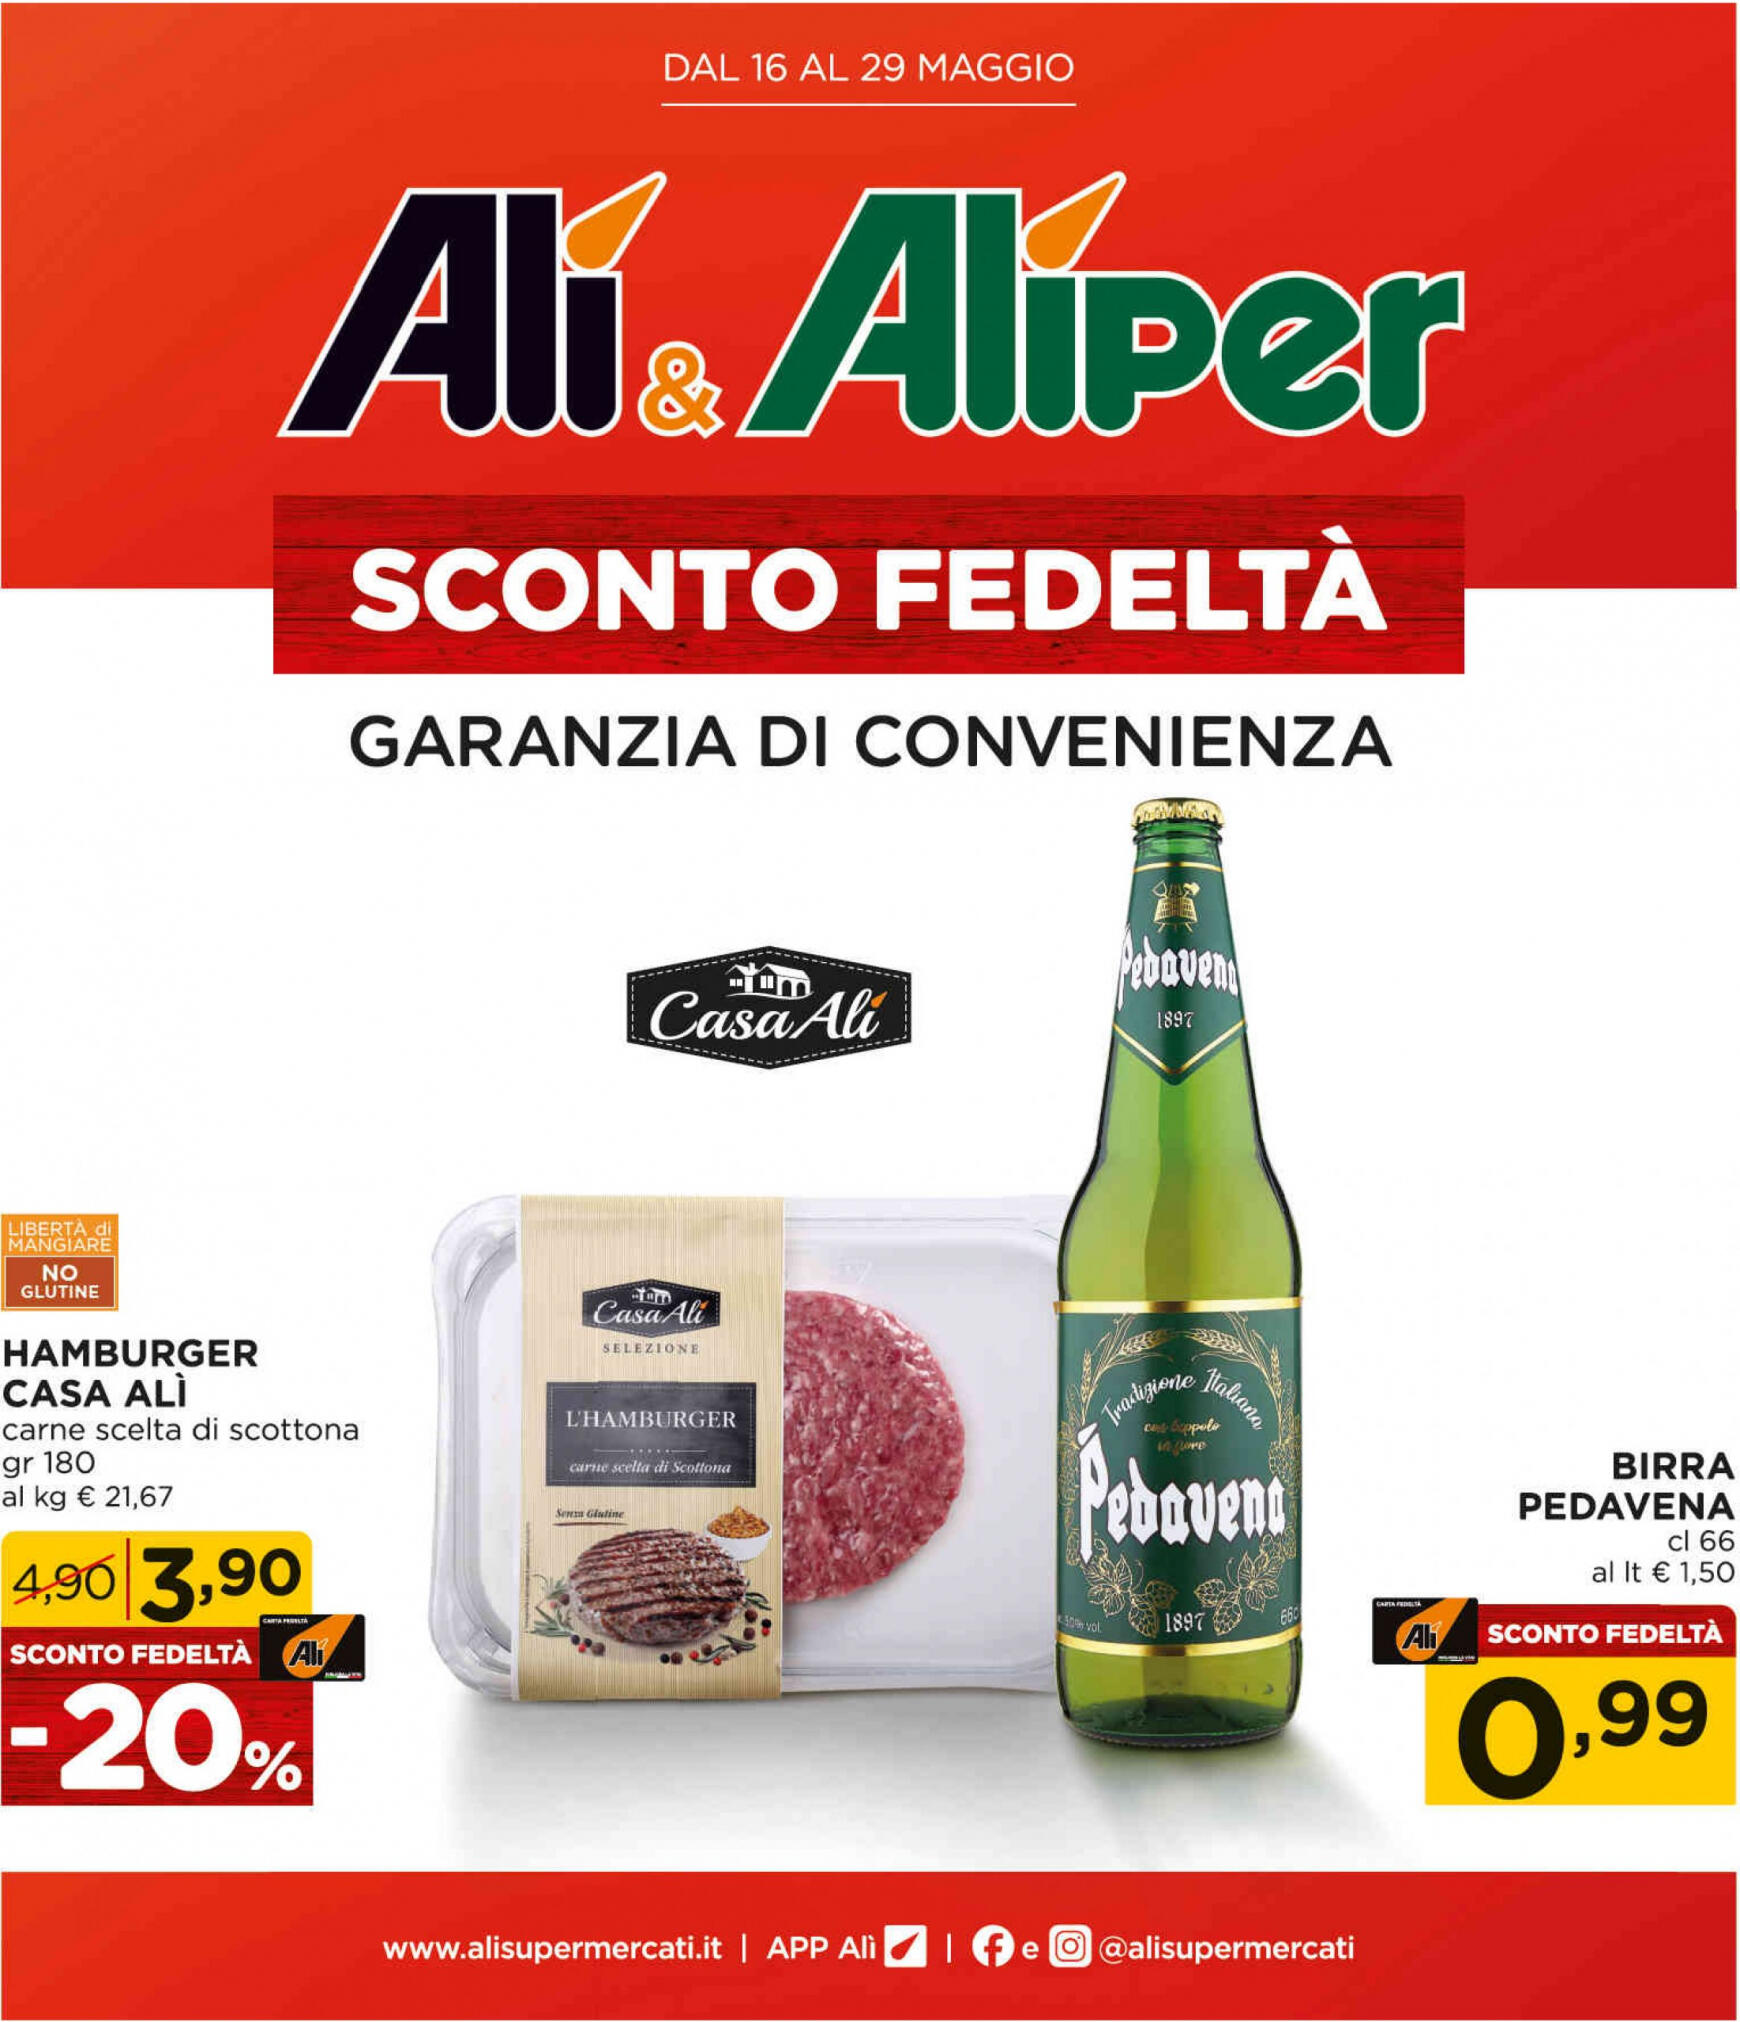 ali-aliper - Nuovo volantino Ali - Aliper - Sconto fedeltà 16.05. - 29.05. - page: 1